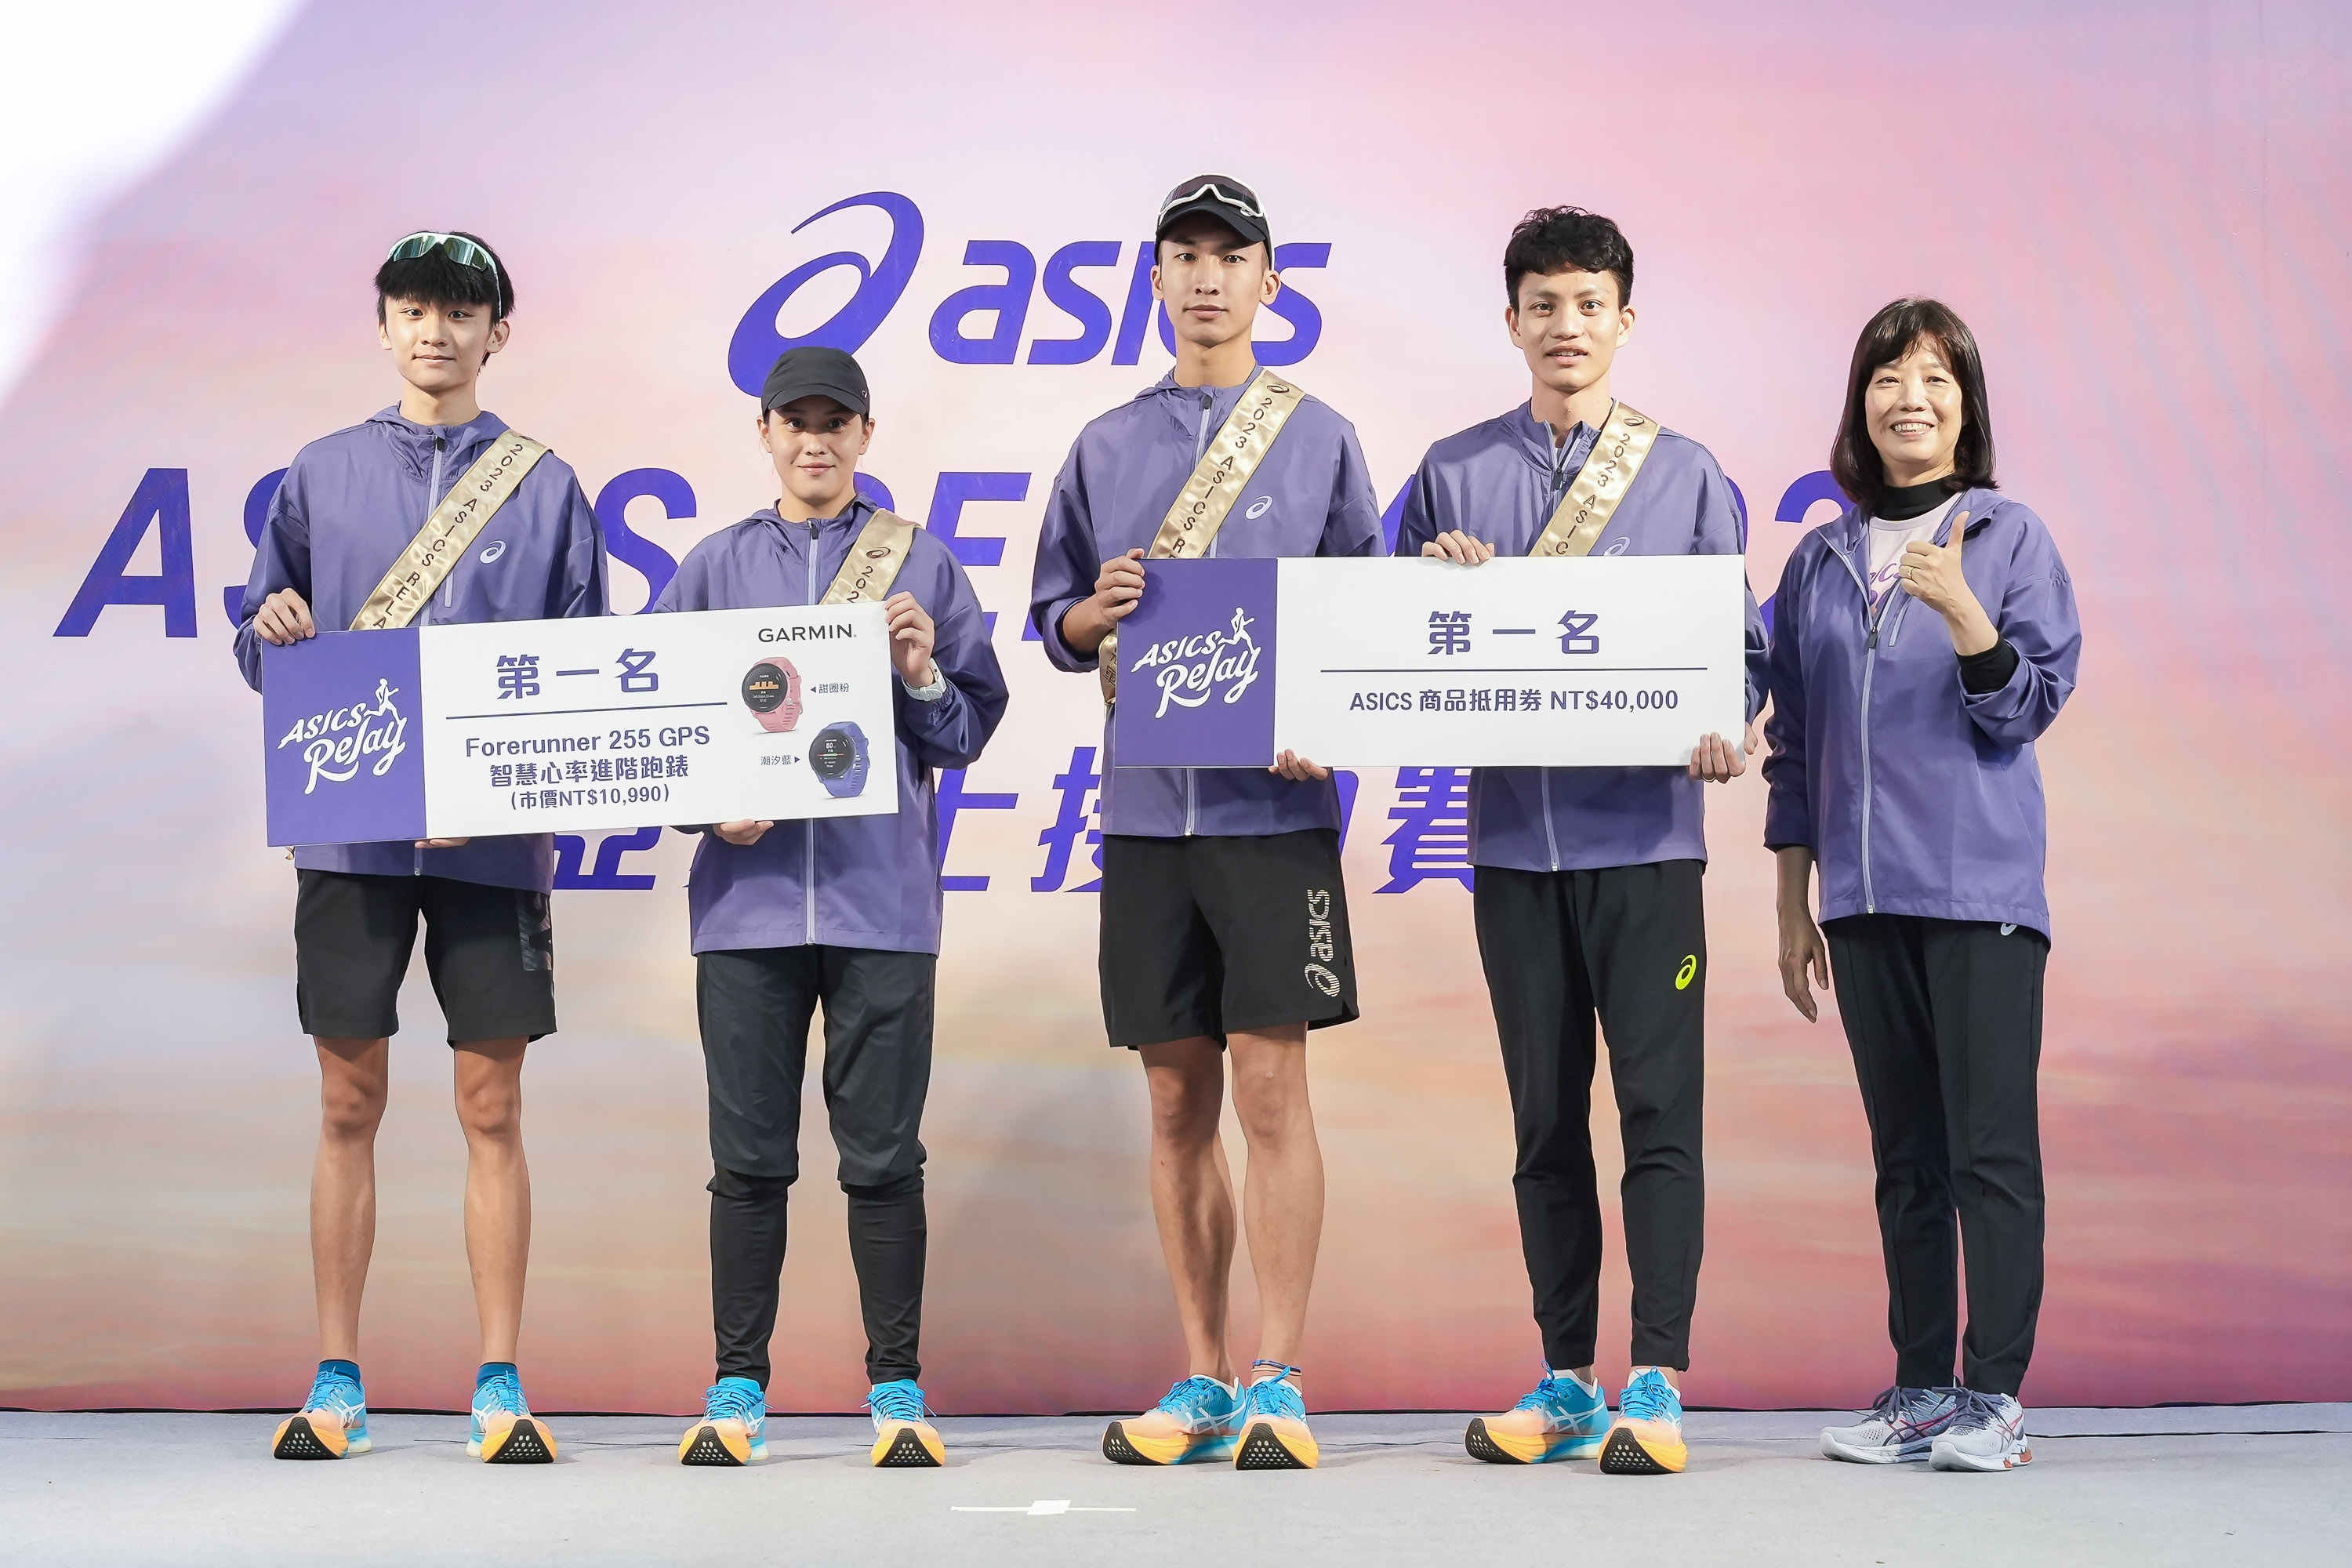 本屆冠軍由Team ASICS選手溫連忠、楊皓評、江彥綸及賴庭萱組成的ASICS SPEED隊，以1小時10分8秒的成績奪得冠軍。官方提供